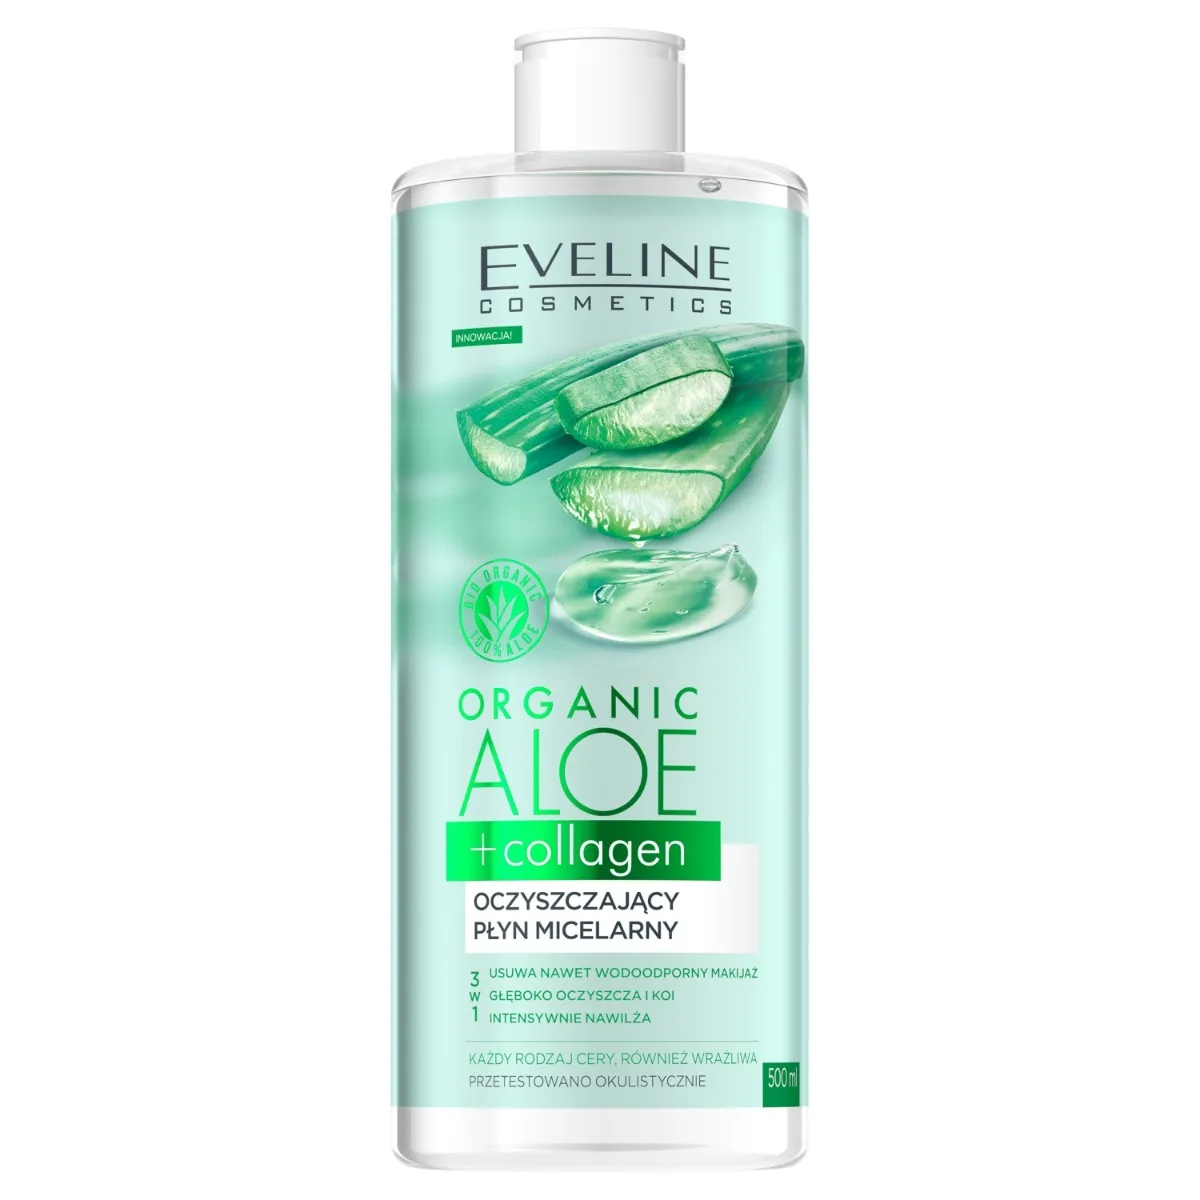 Eveline Cosmetics Organic Aloe + Collagen płyn micelarny oczyszczający, 500 ml